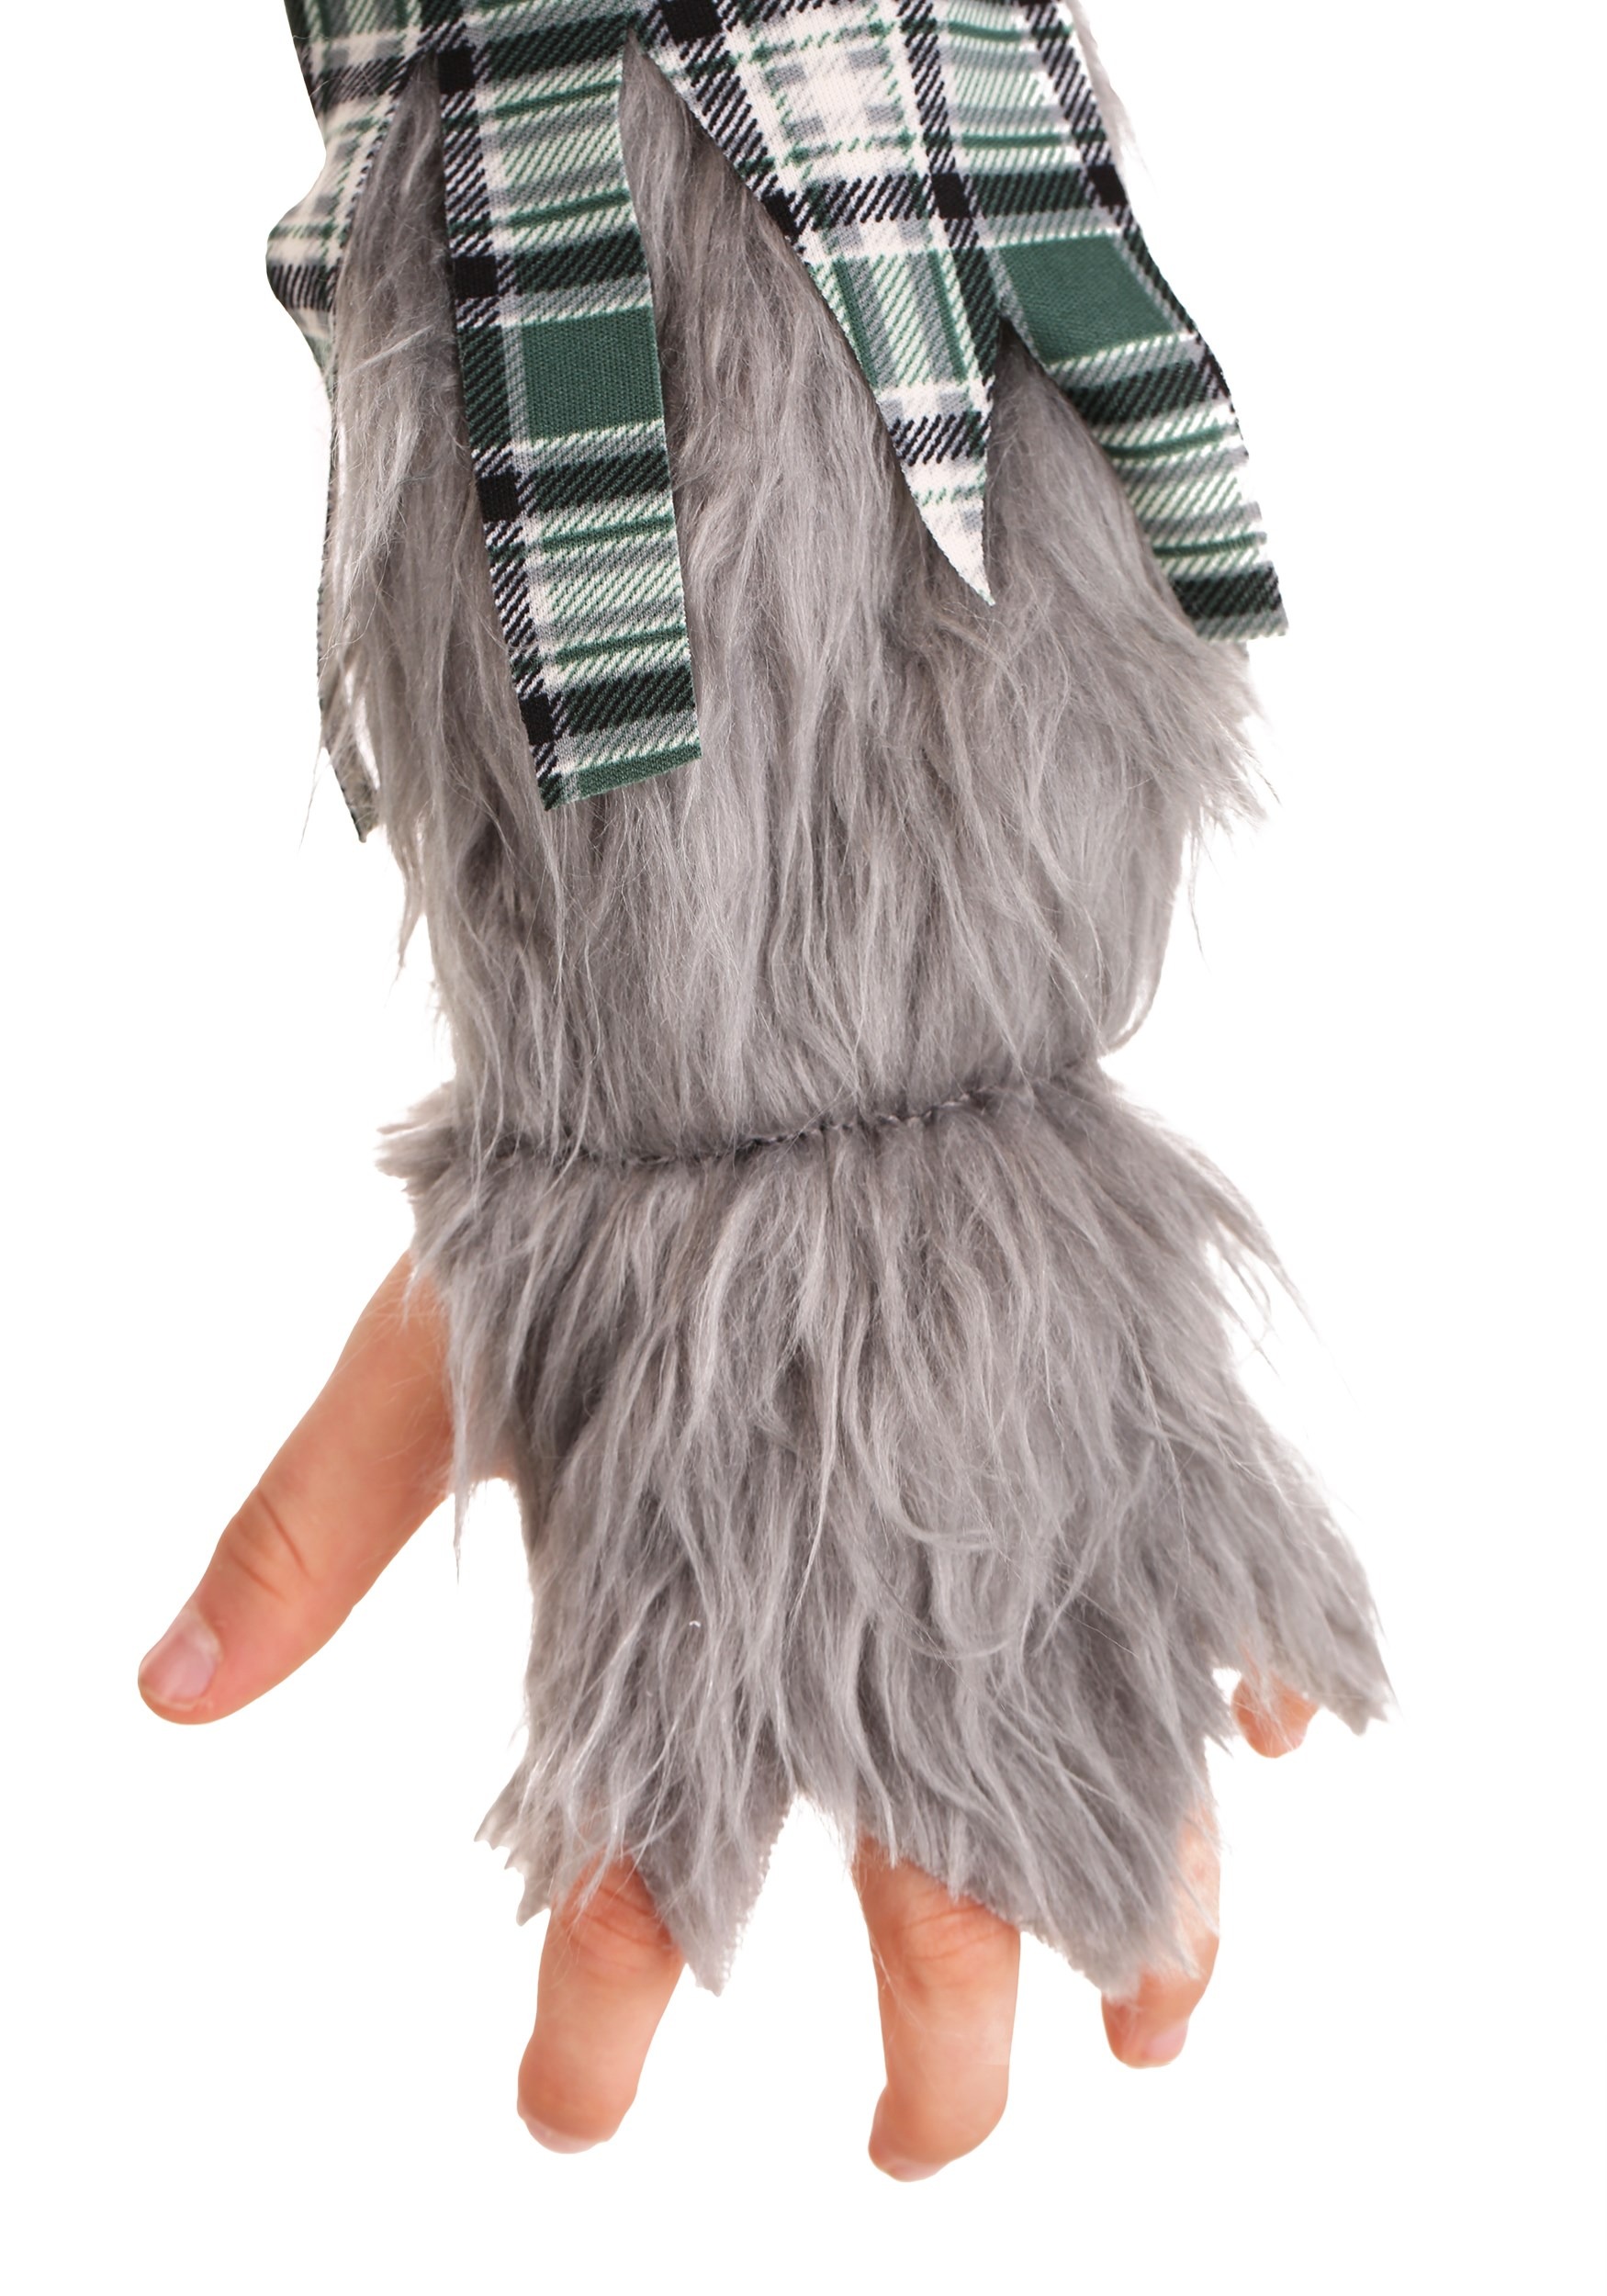 Werewolf Fancy Dress Costume For Kids